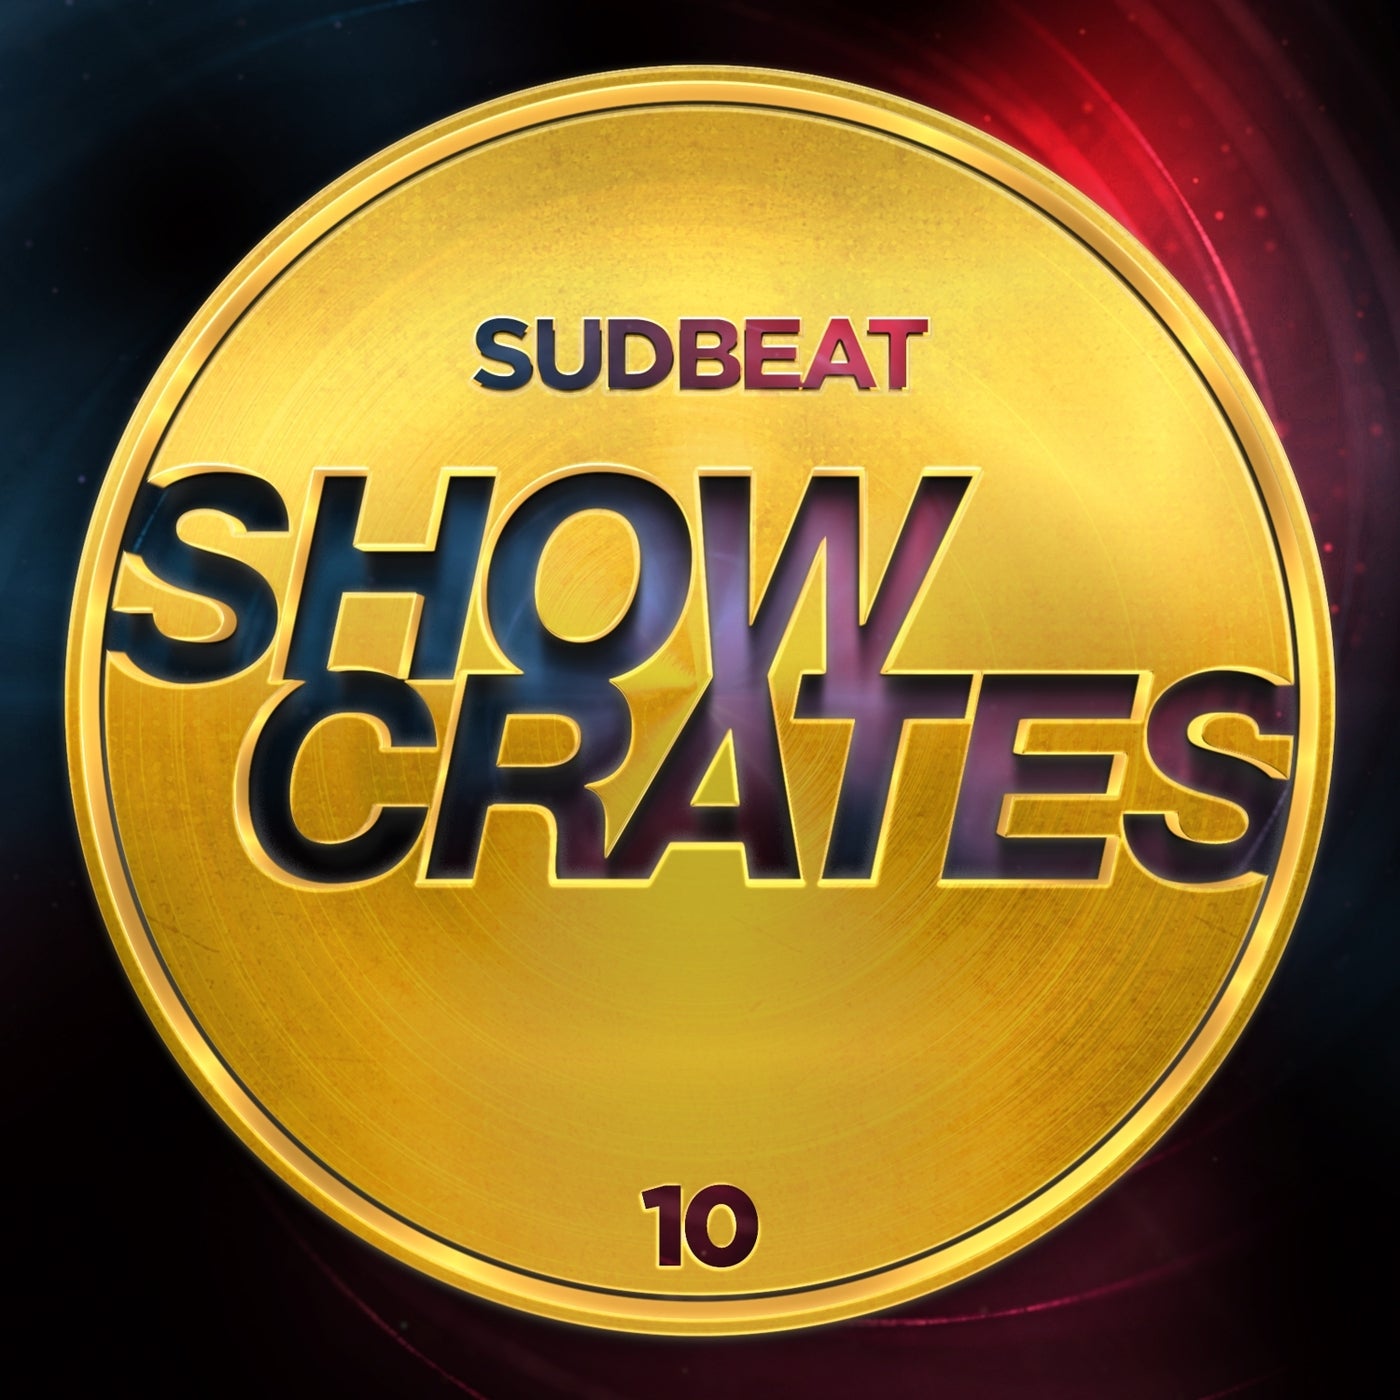 VA – Sudbeat Showcrates 10 [Hi-RES]